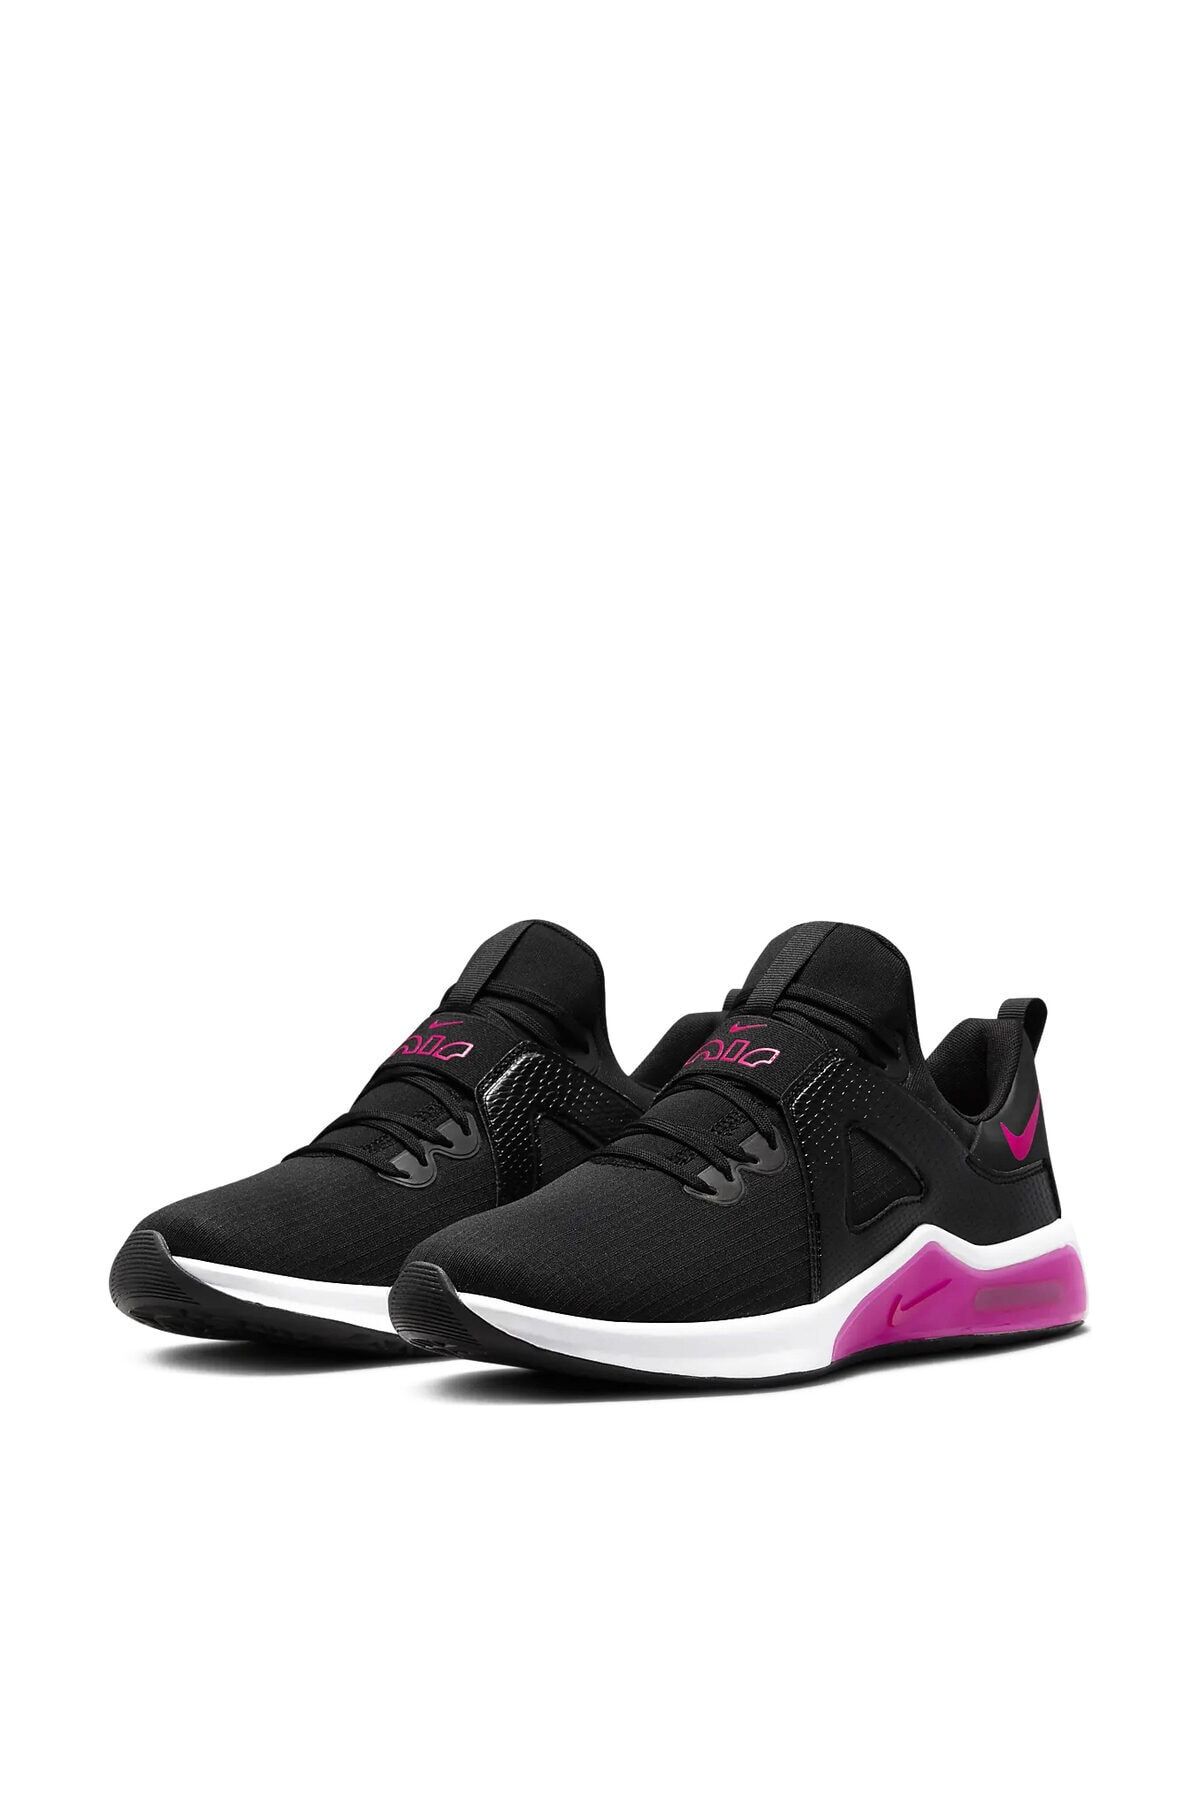 Nike W Aır Max Bella Tr 5 Kadın Günlük Ayakkabıdd9285-061